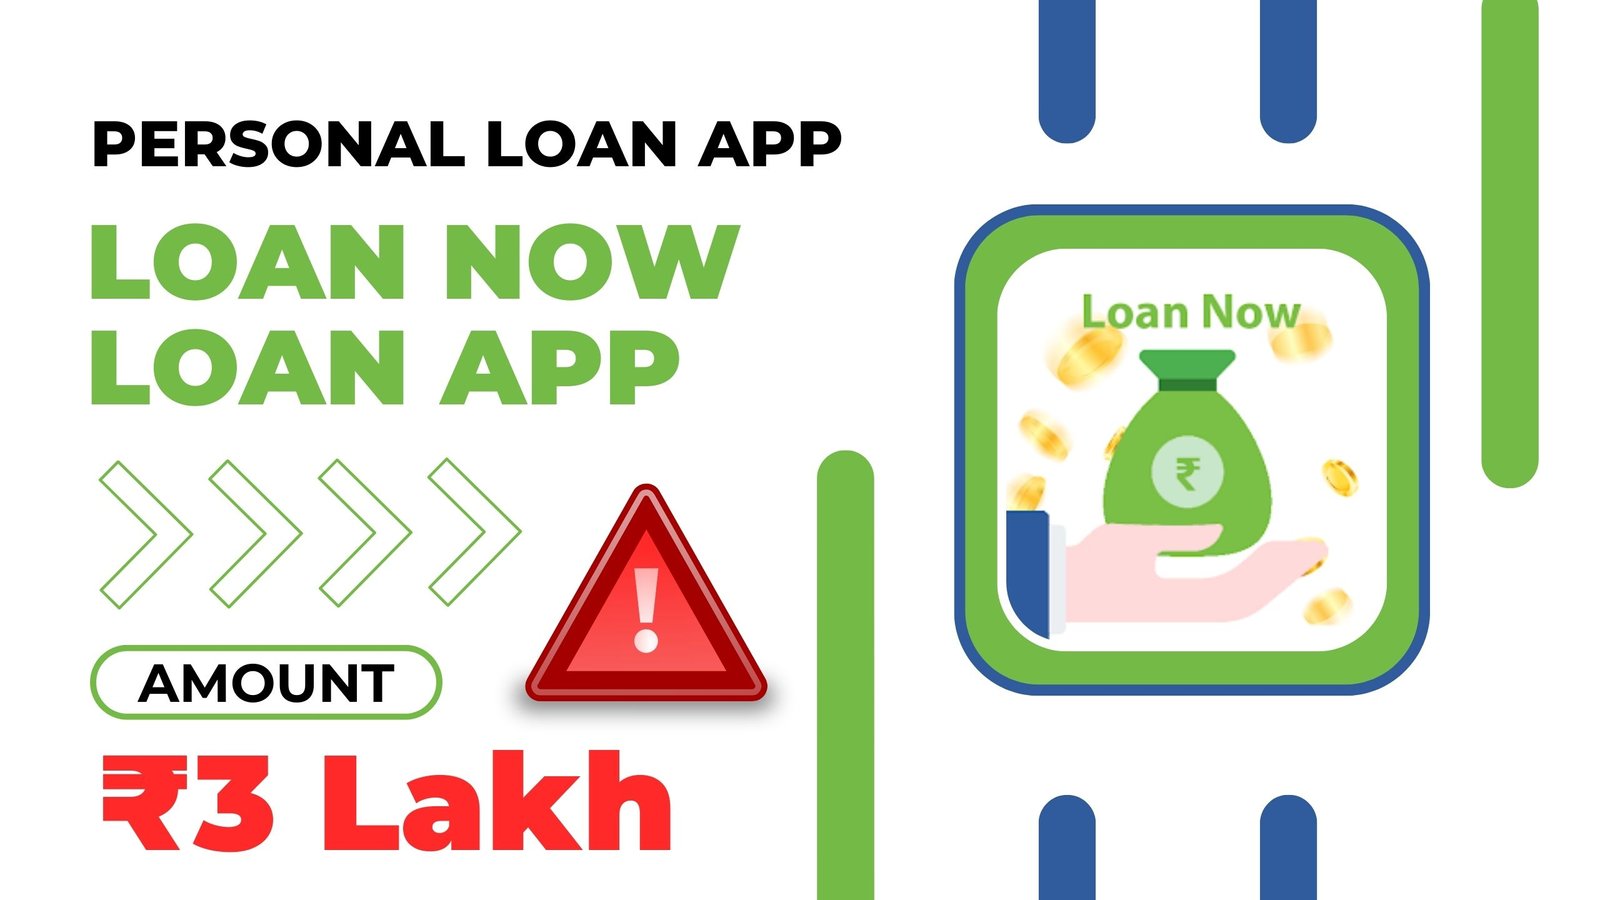 Loan Now Loan App Loan Amount